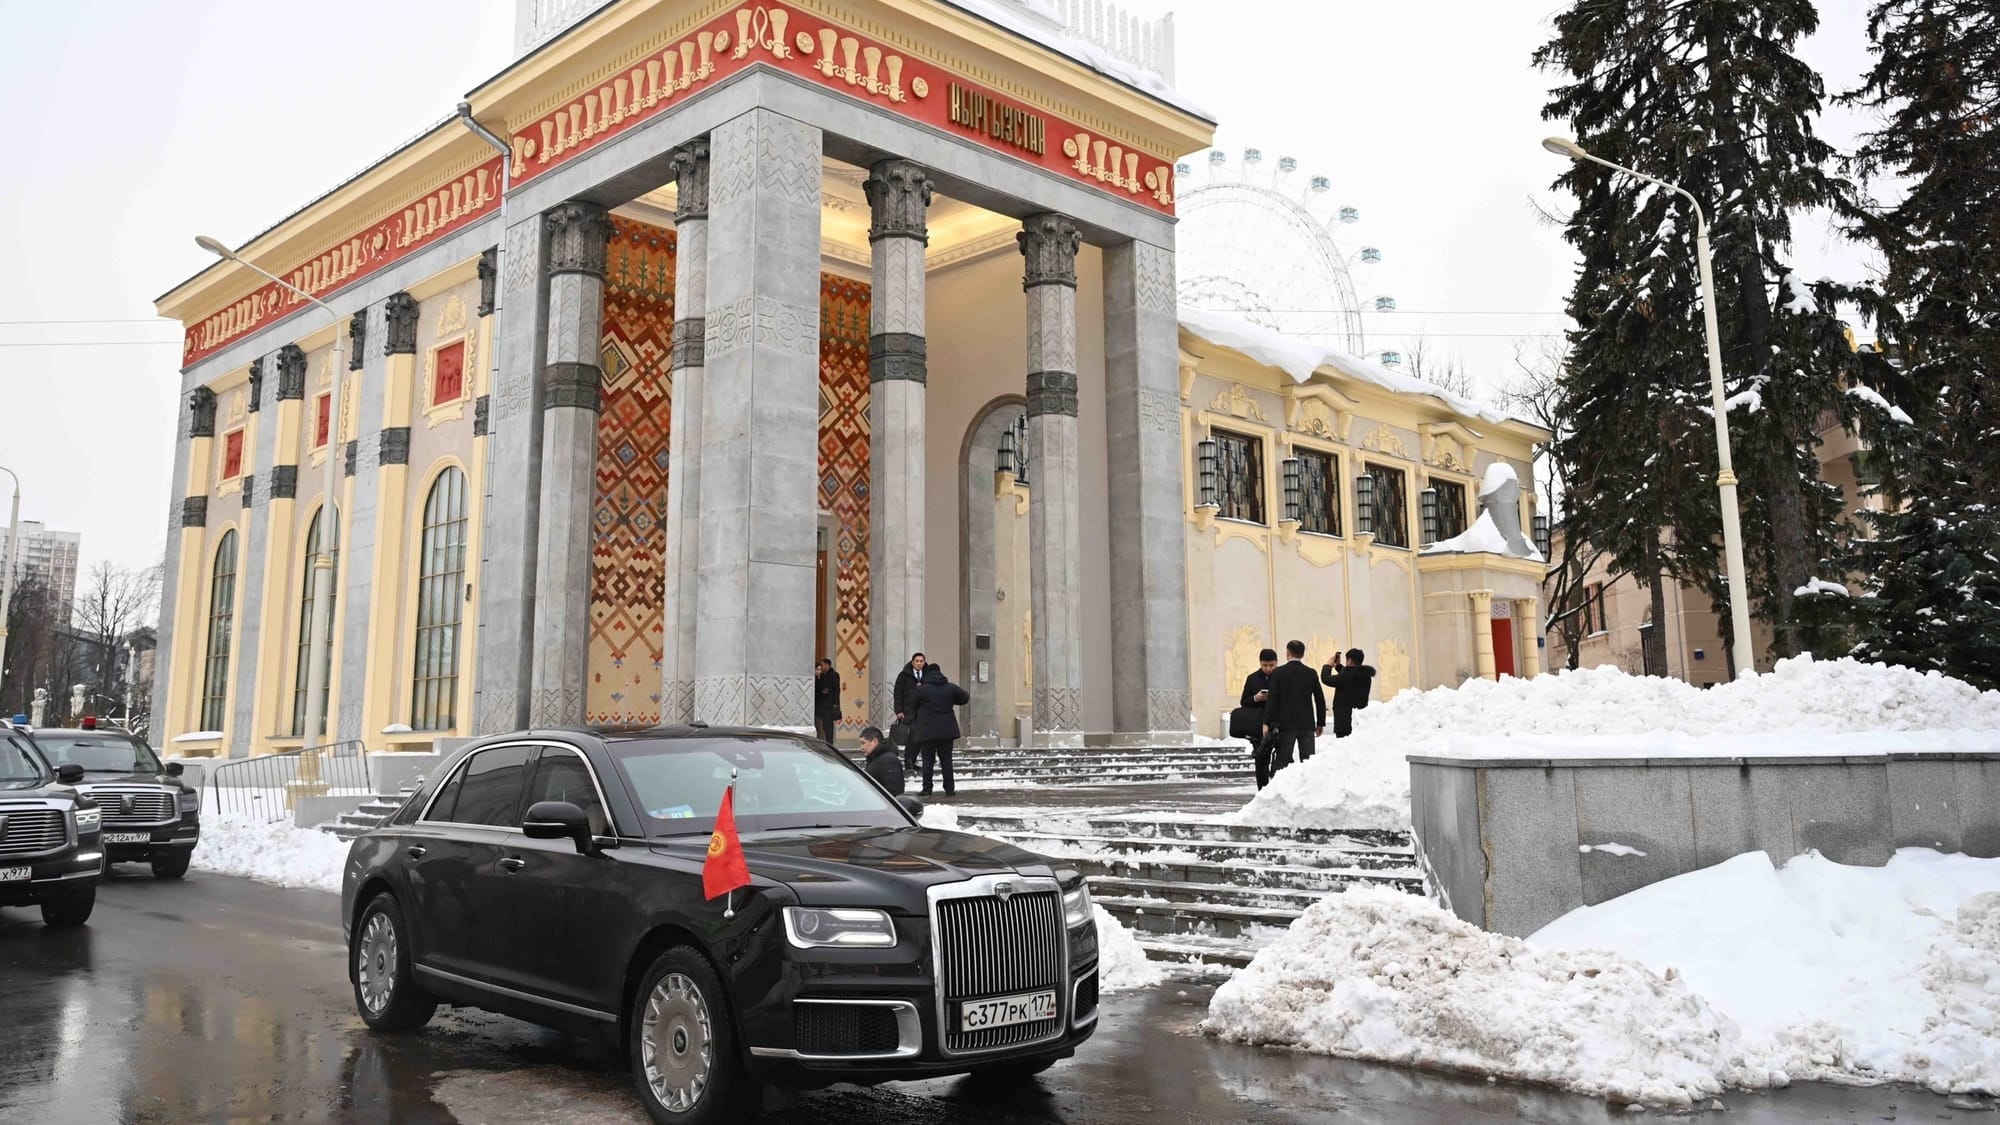 Ресторан кыргызской кухни появится на ВДНХ в Москве